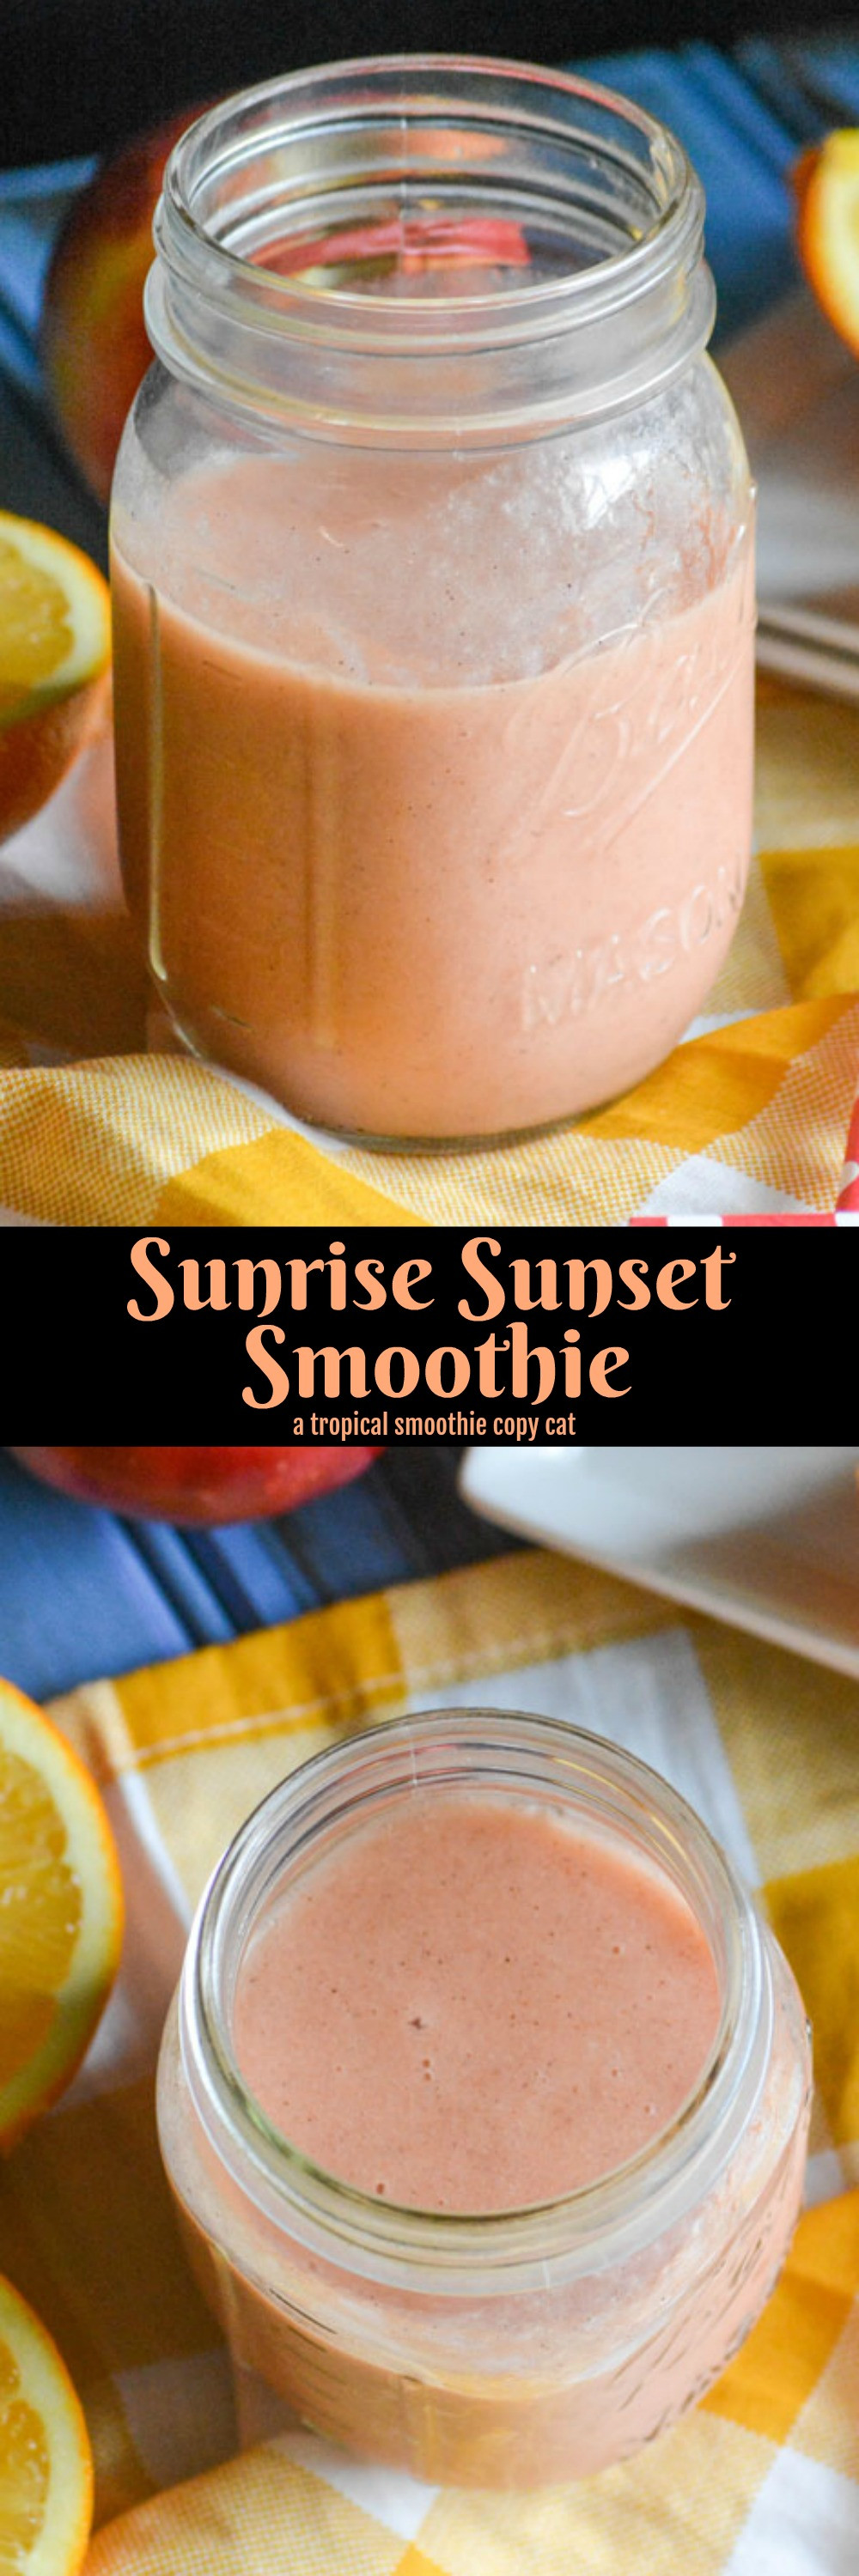 Tropical Smoothie Cafe Recipes
 tropical smoothie cafe recipes sunrise sunset